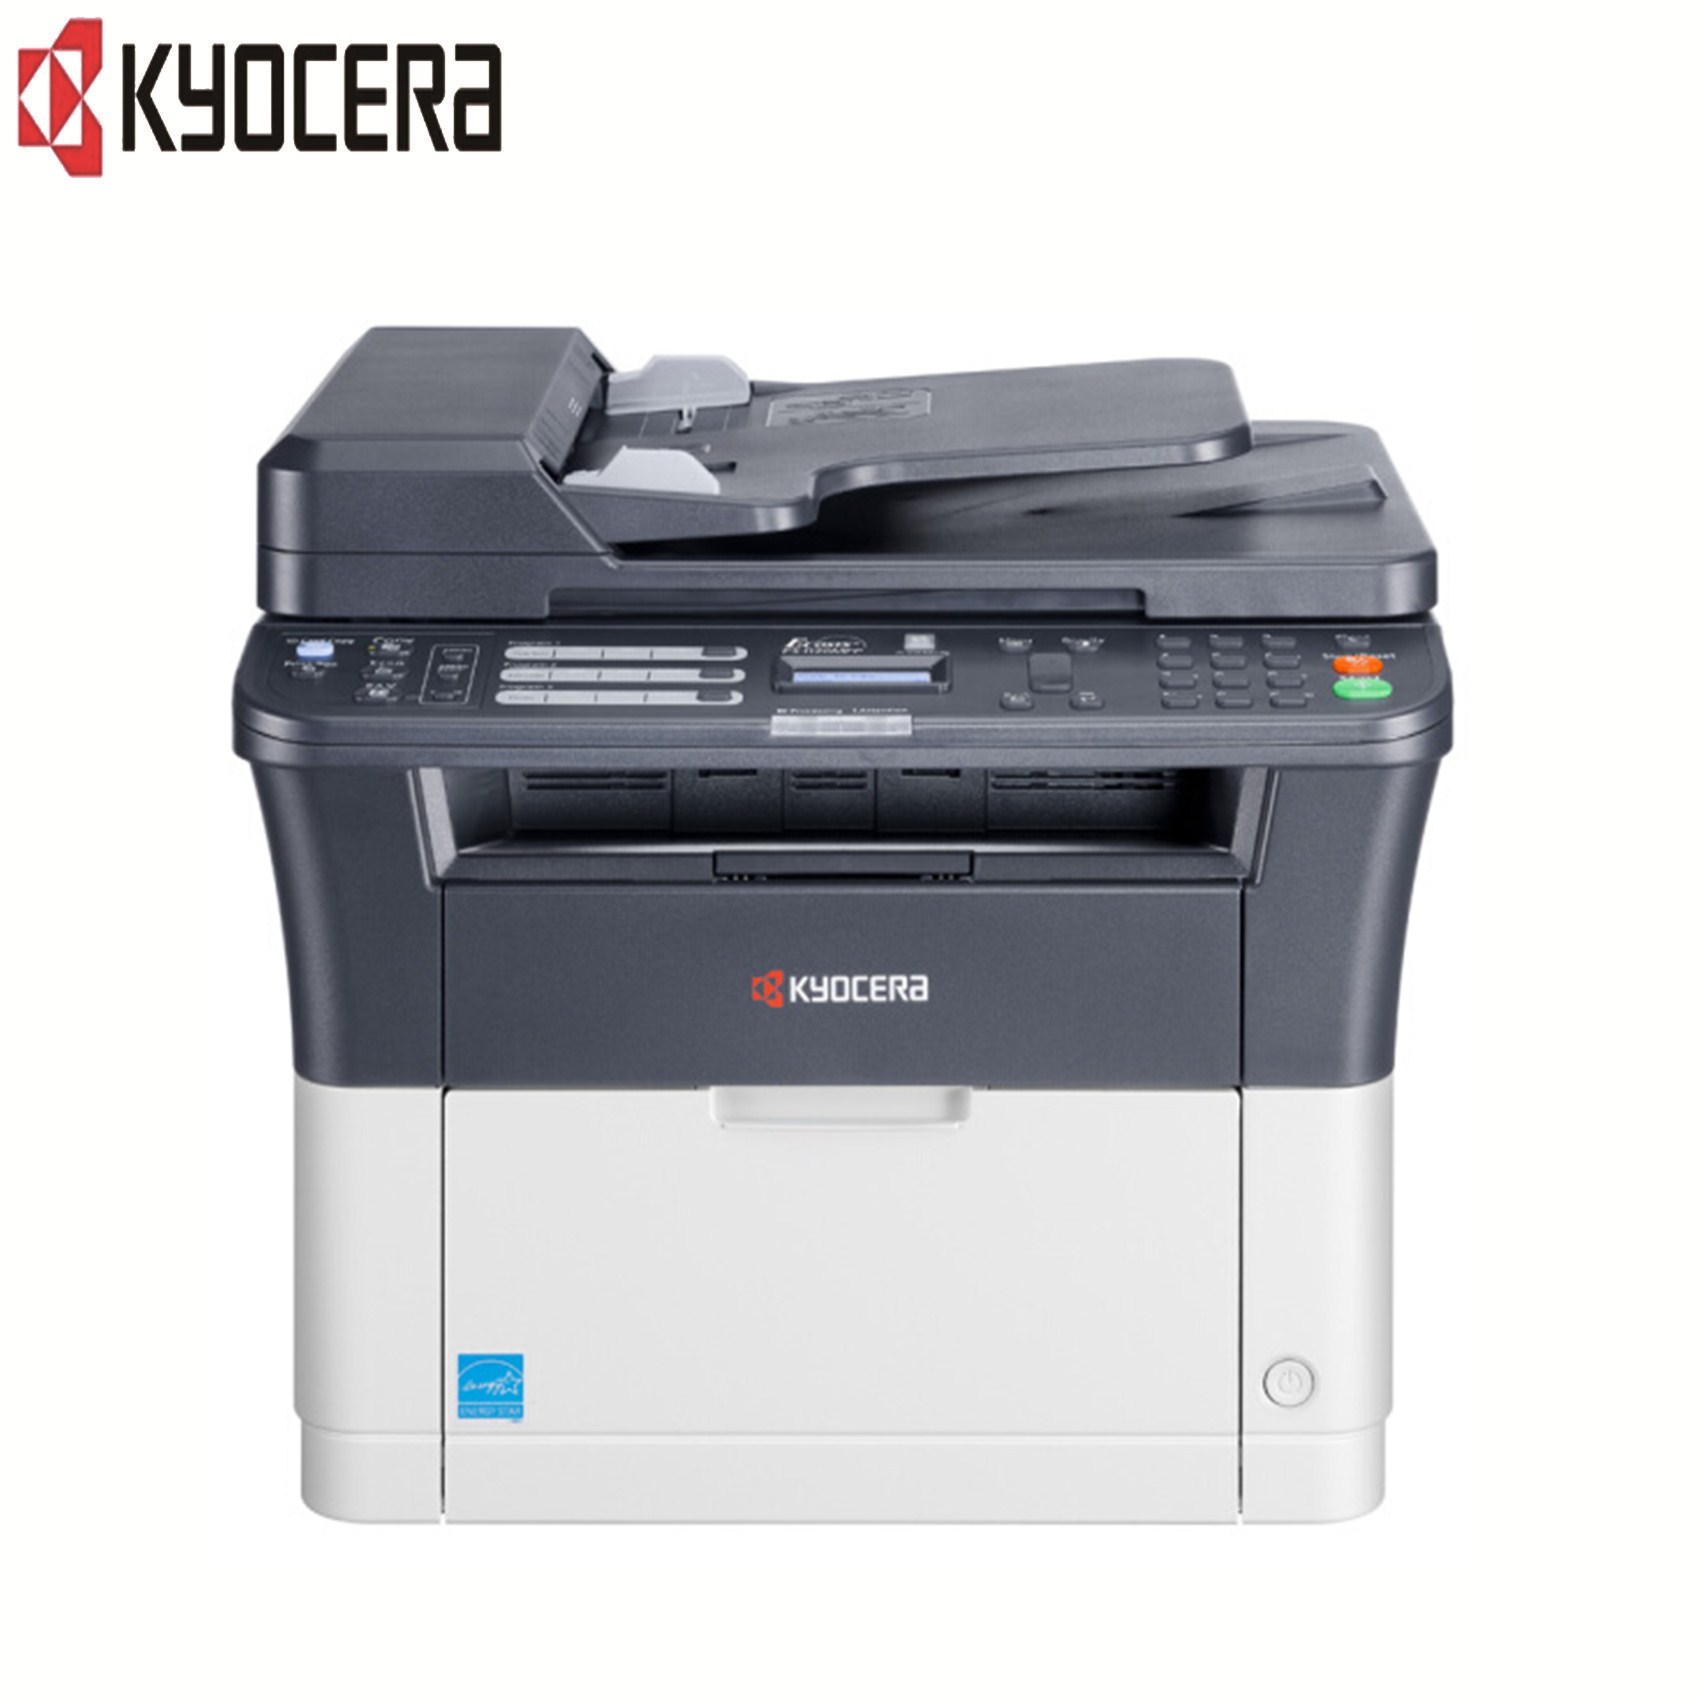 京瓷(KYOCERA)FS-1120MFP黑白激光多功能一体机 打印/复印/扫描/传真 官方标配